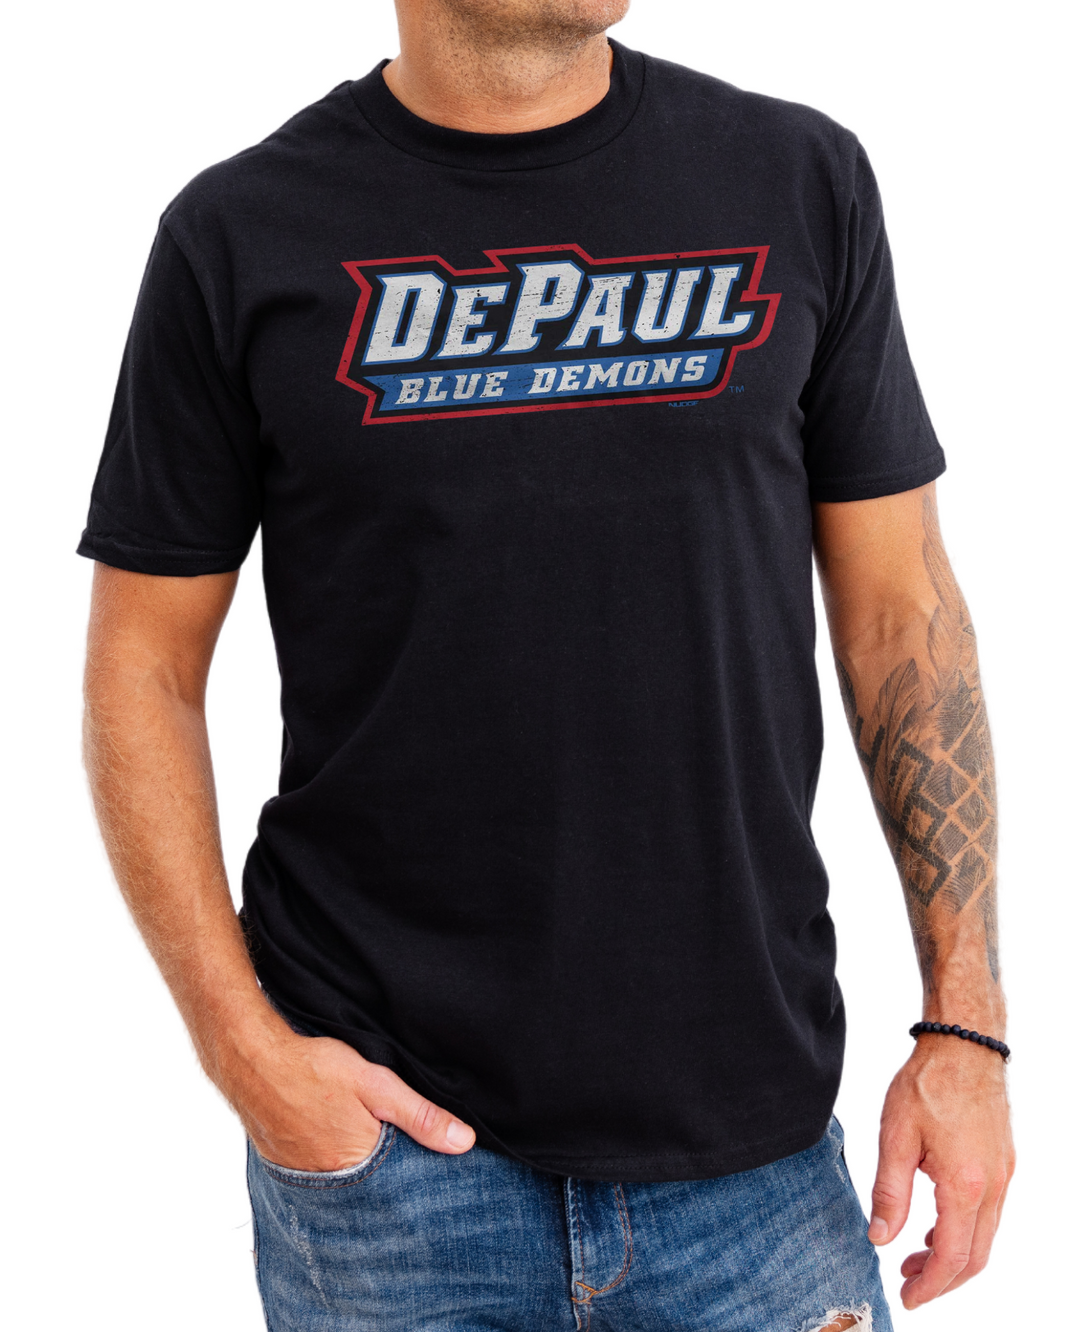 DePaul University Blue Demons Wordmark Black T-Shirt on model